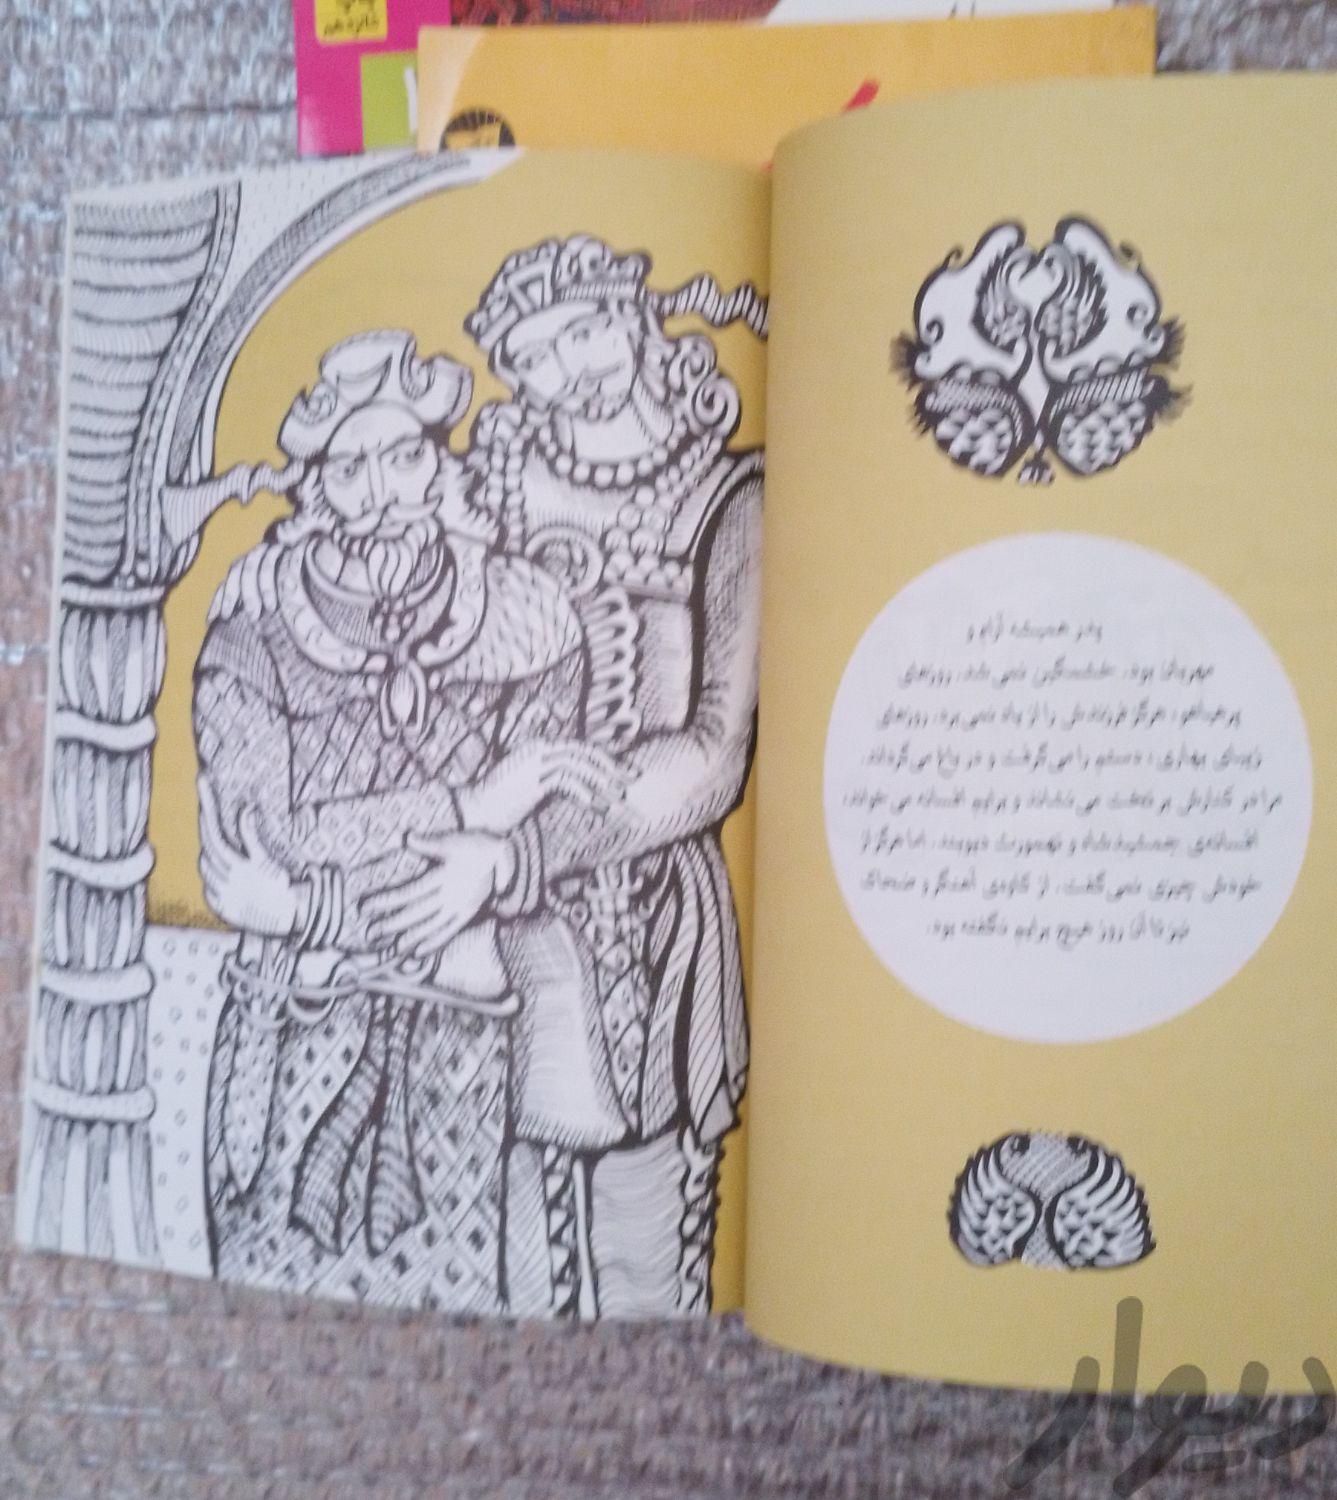 ۳کتاب (از قصه های شاهنامه و شازده کوچولو)|کتاب و مجله آموزشی|تهران, بهارستان|دیوار